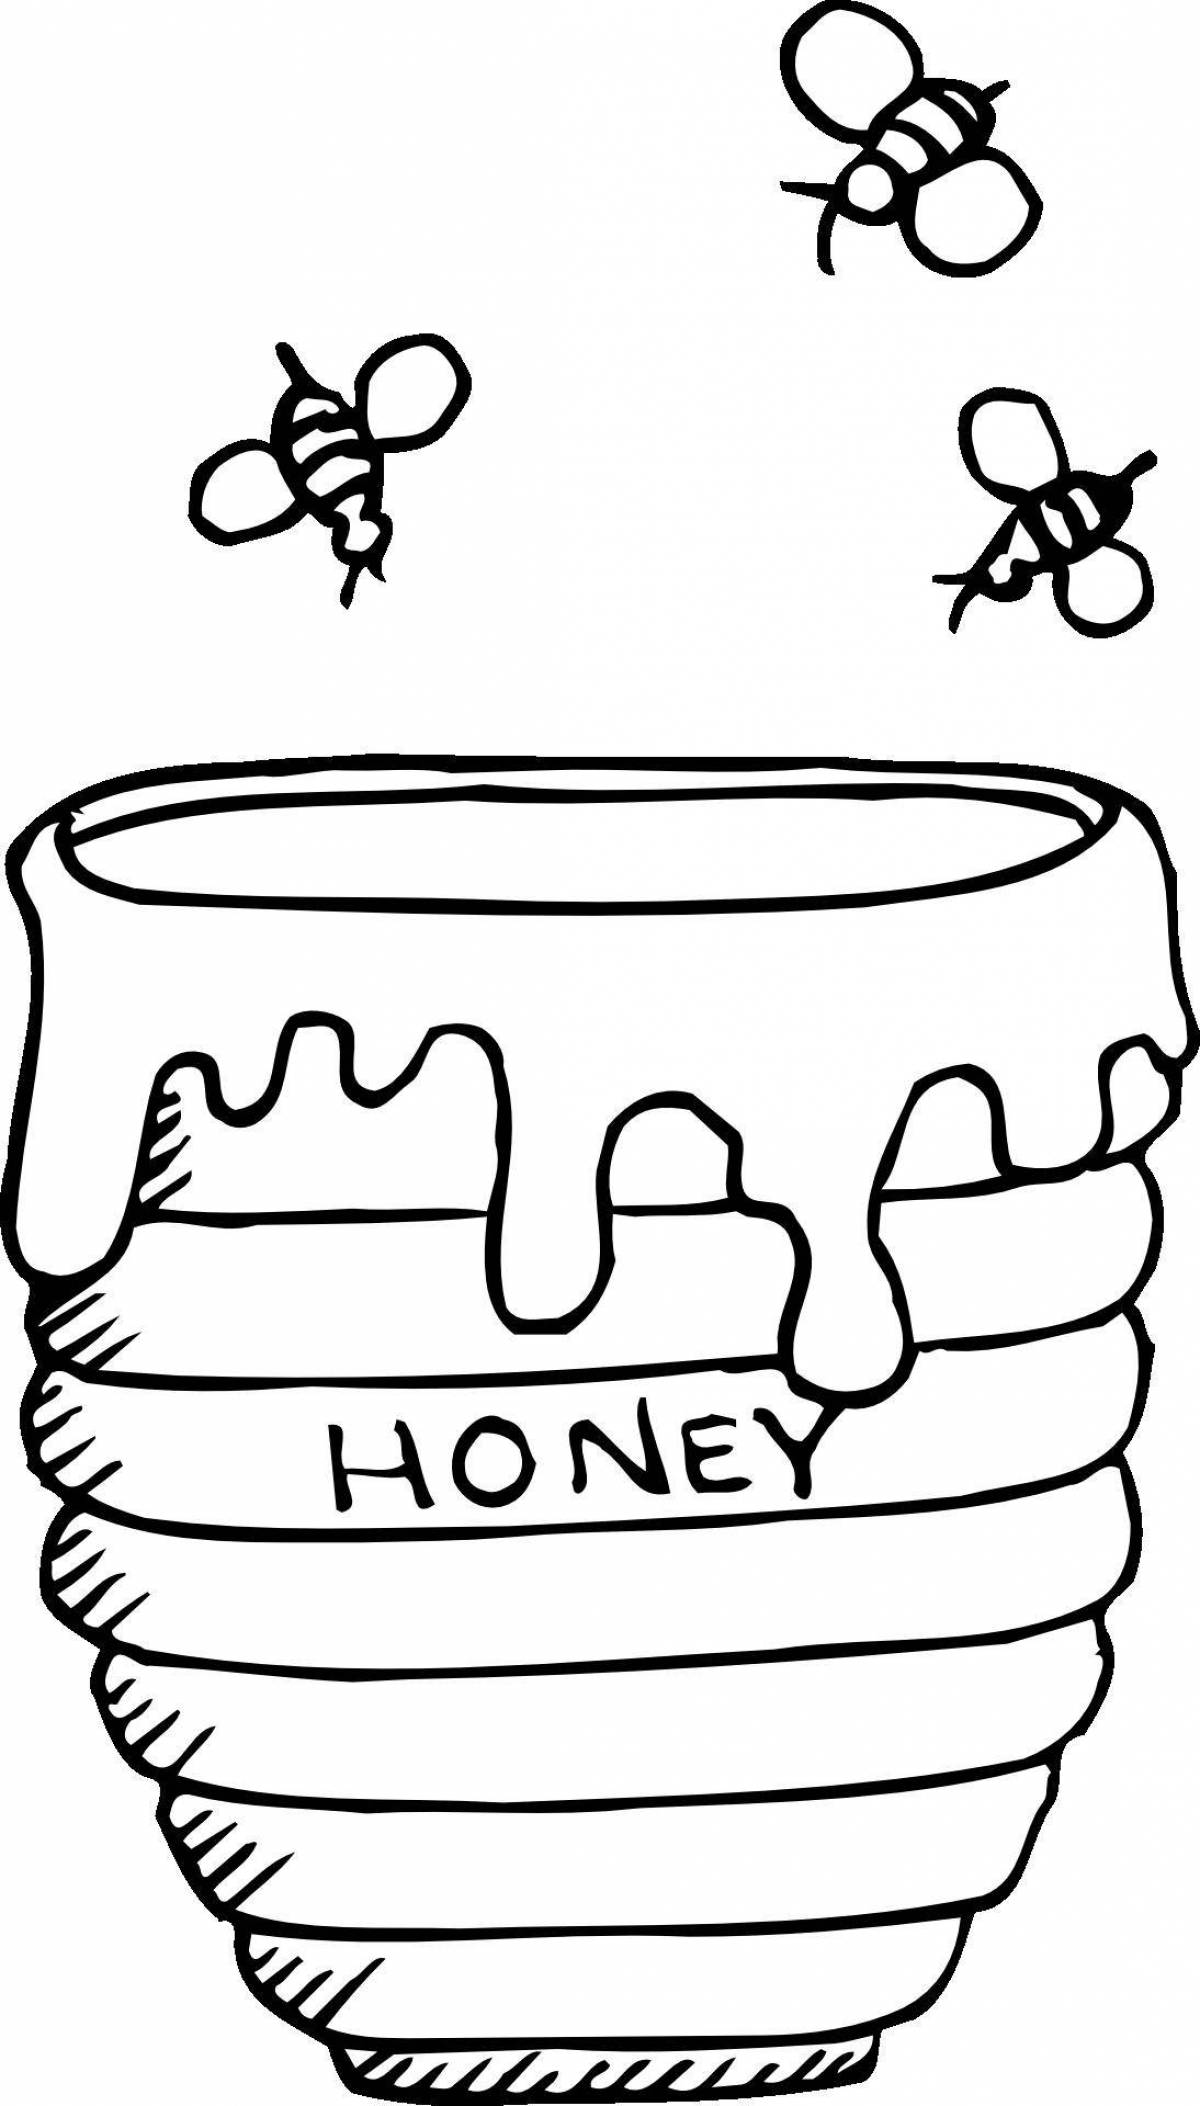 Пчела и медведь у бочки мёда